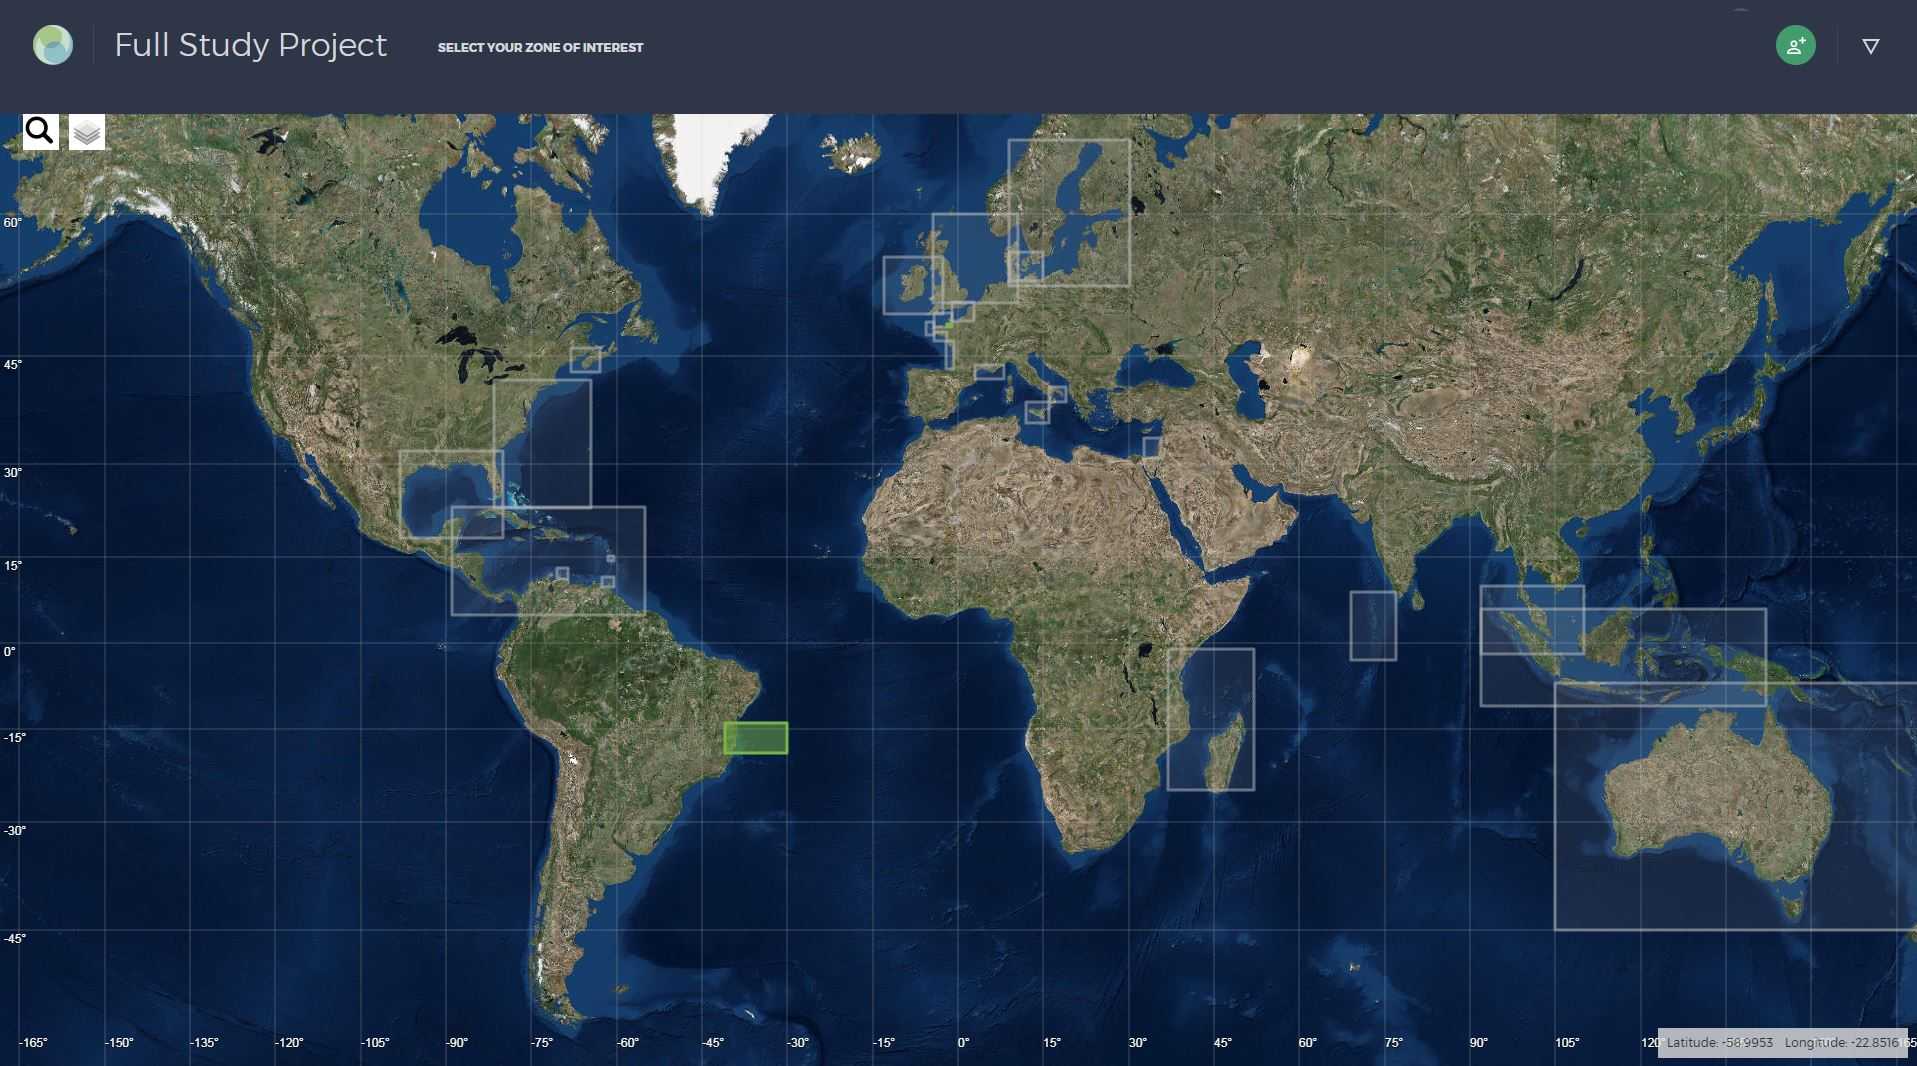 Лиски со спутника в реальном времени карта - 92 фото